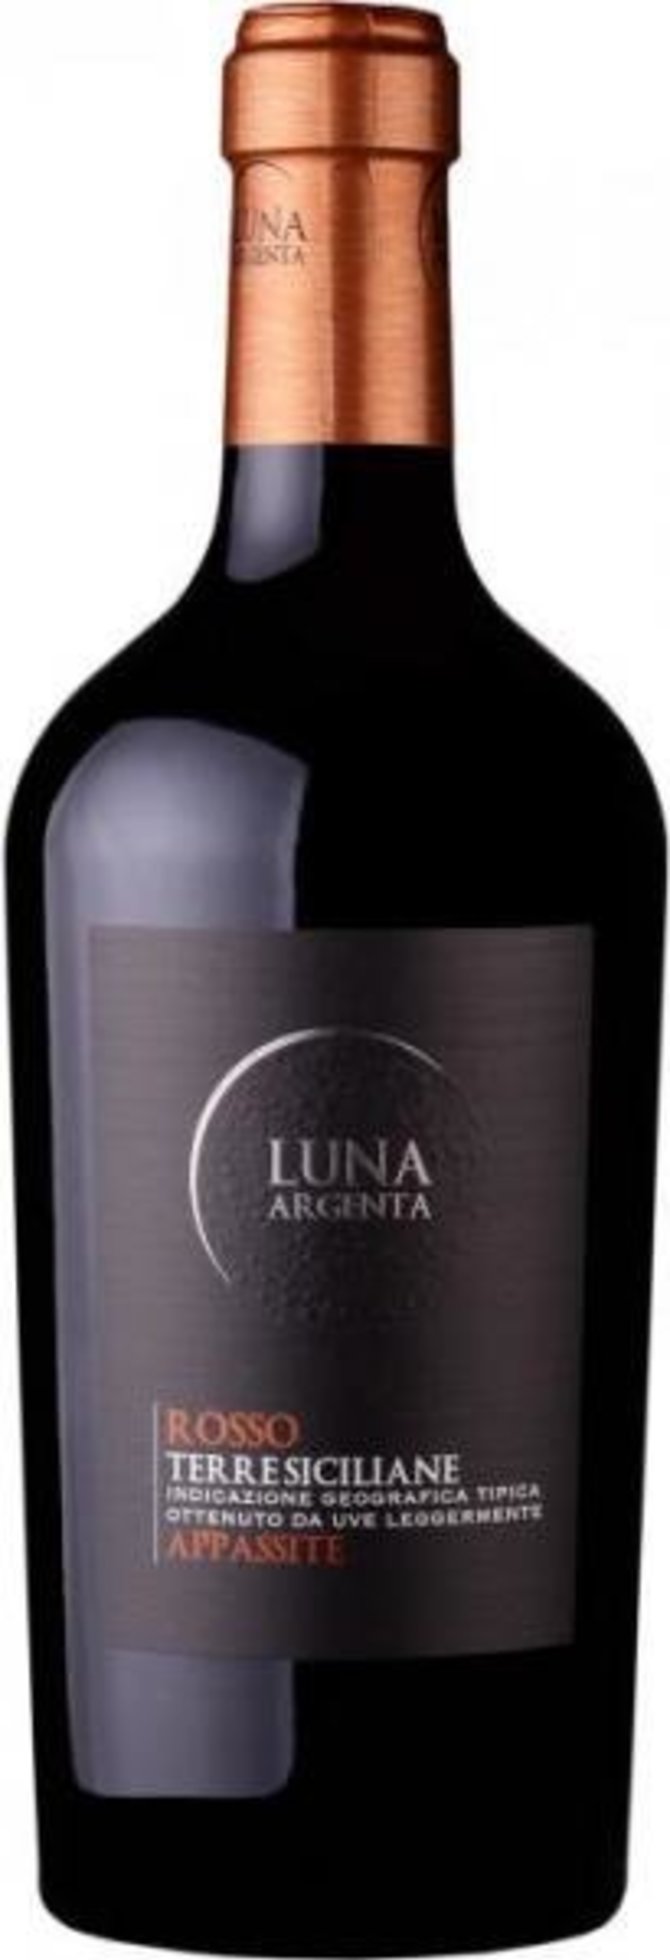 Lietuvoje platinami vynai